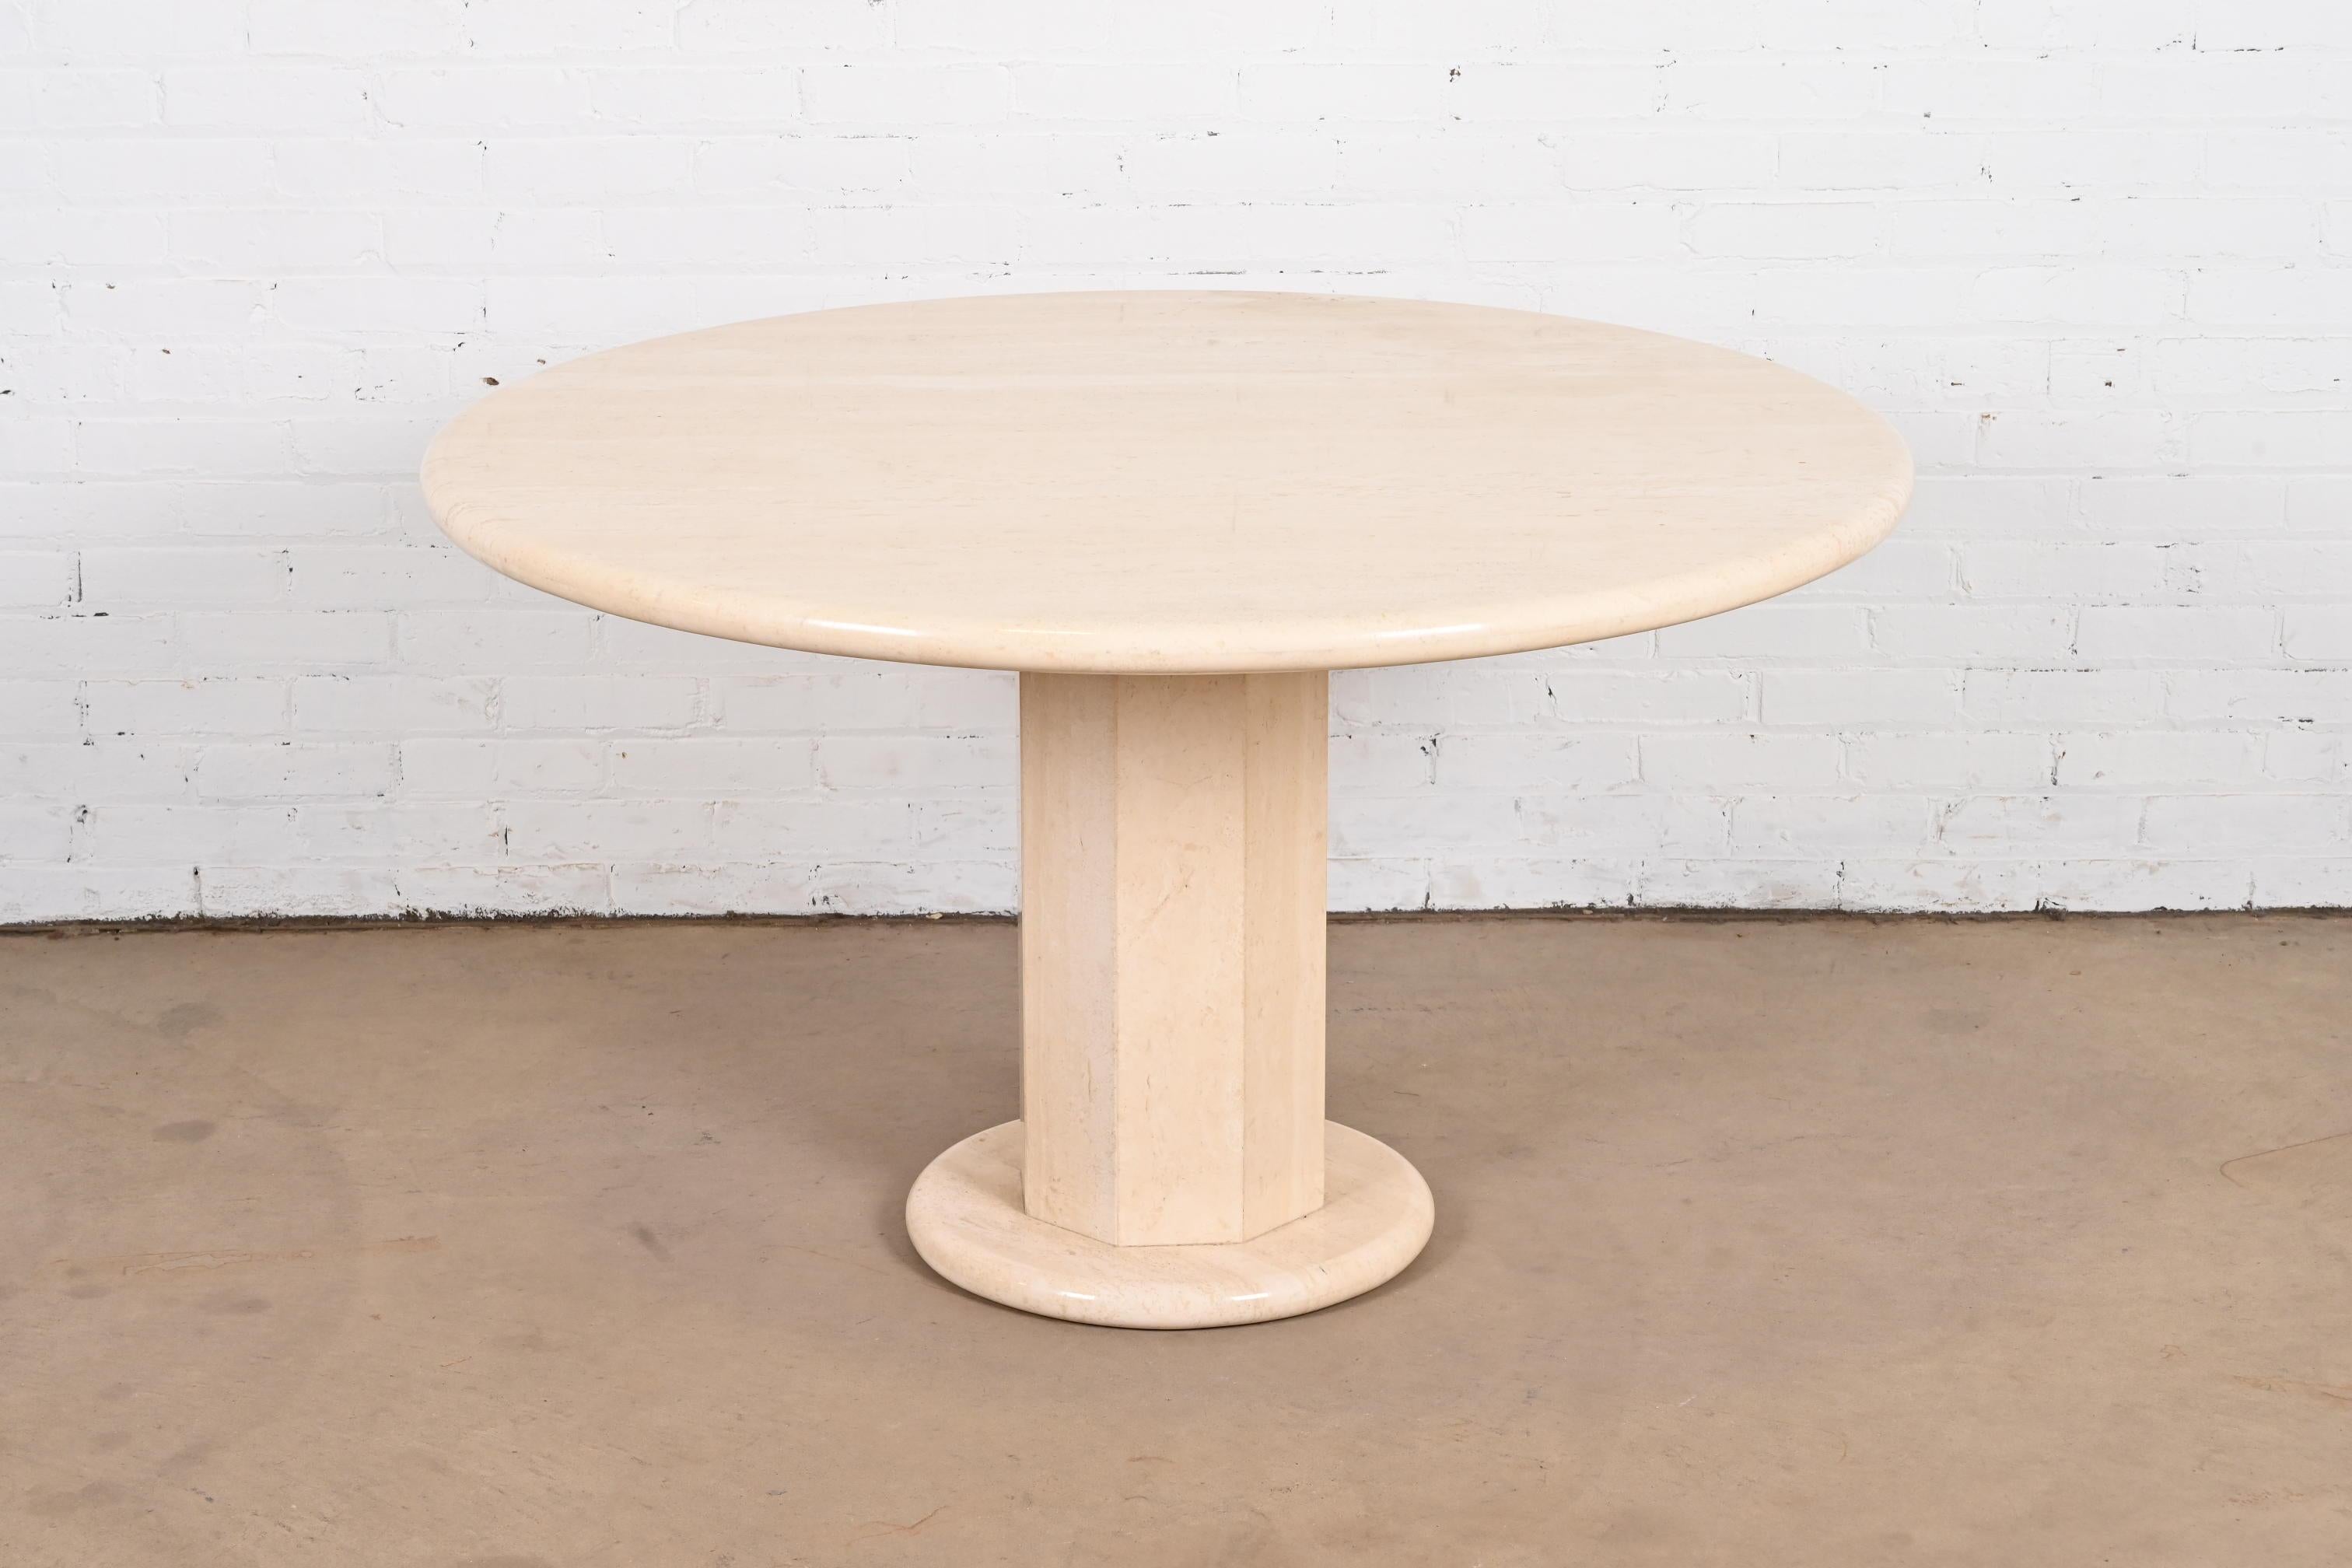 Ein außergewöhnlicher moderner italienischer Travertin-Esstisch mit rundem Sockel, ein Spieltisch oder ein Mitteltisch

Von Ello

Italien, ca. 1970er Jahre

Maße: 48 